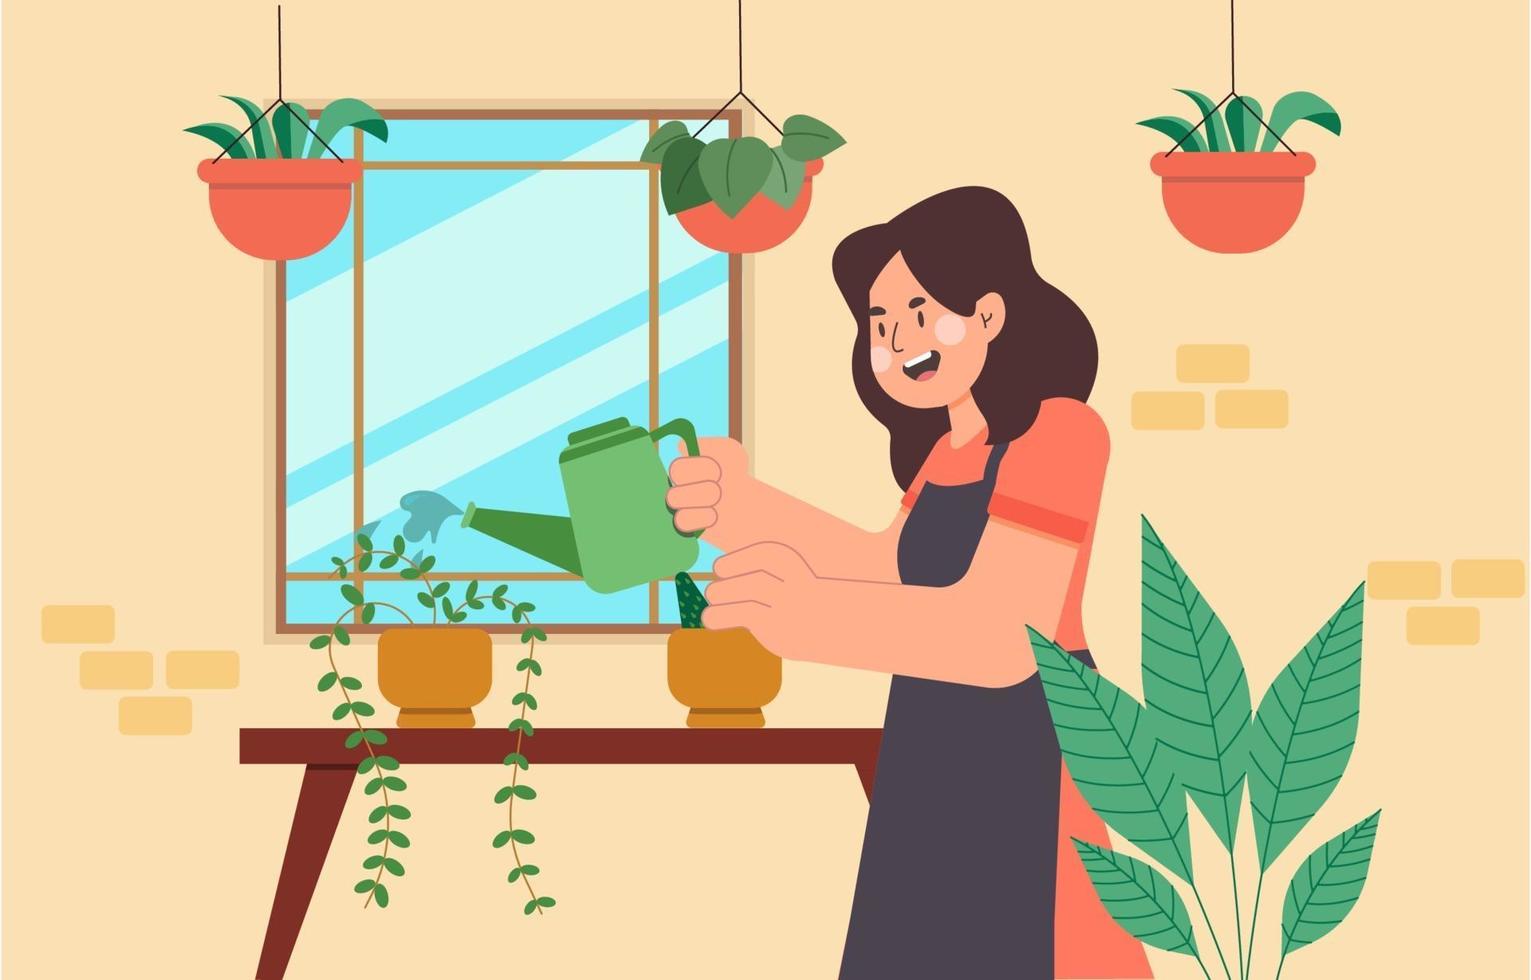 personnage féminin arrosant les plantes dans un jardin accueillant vecteur